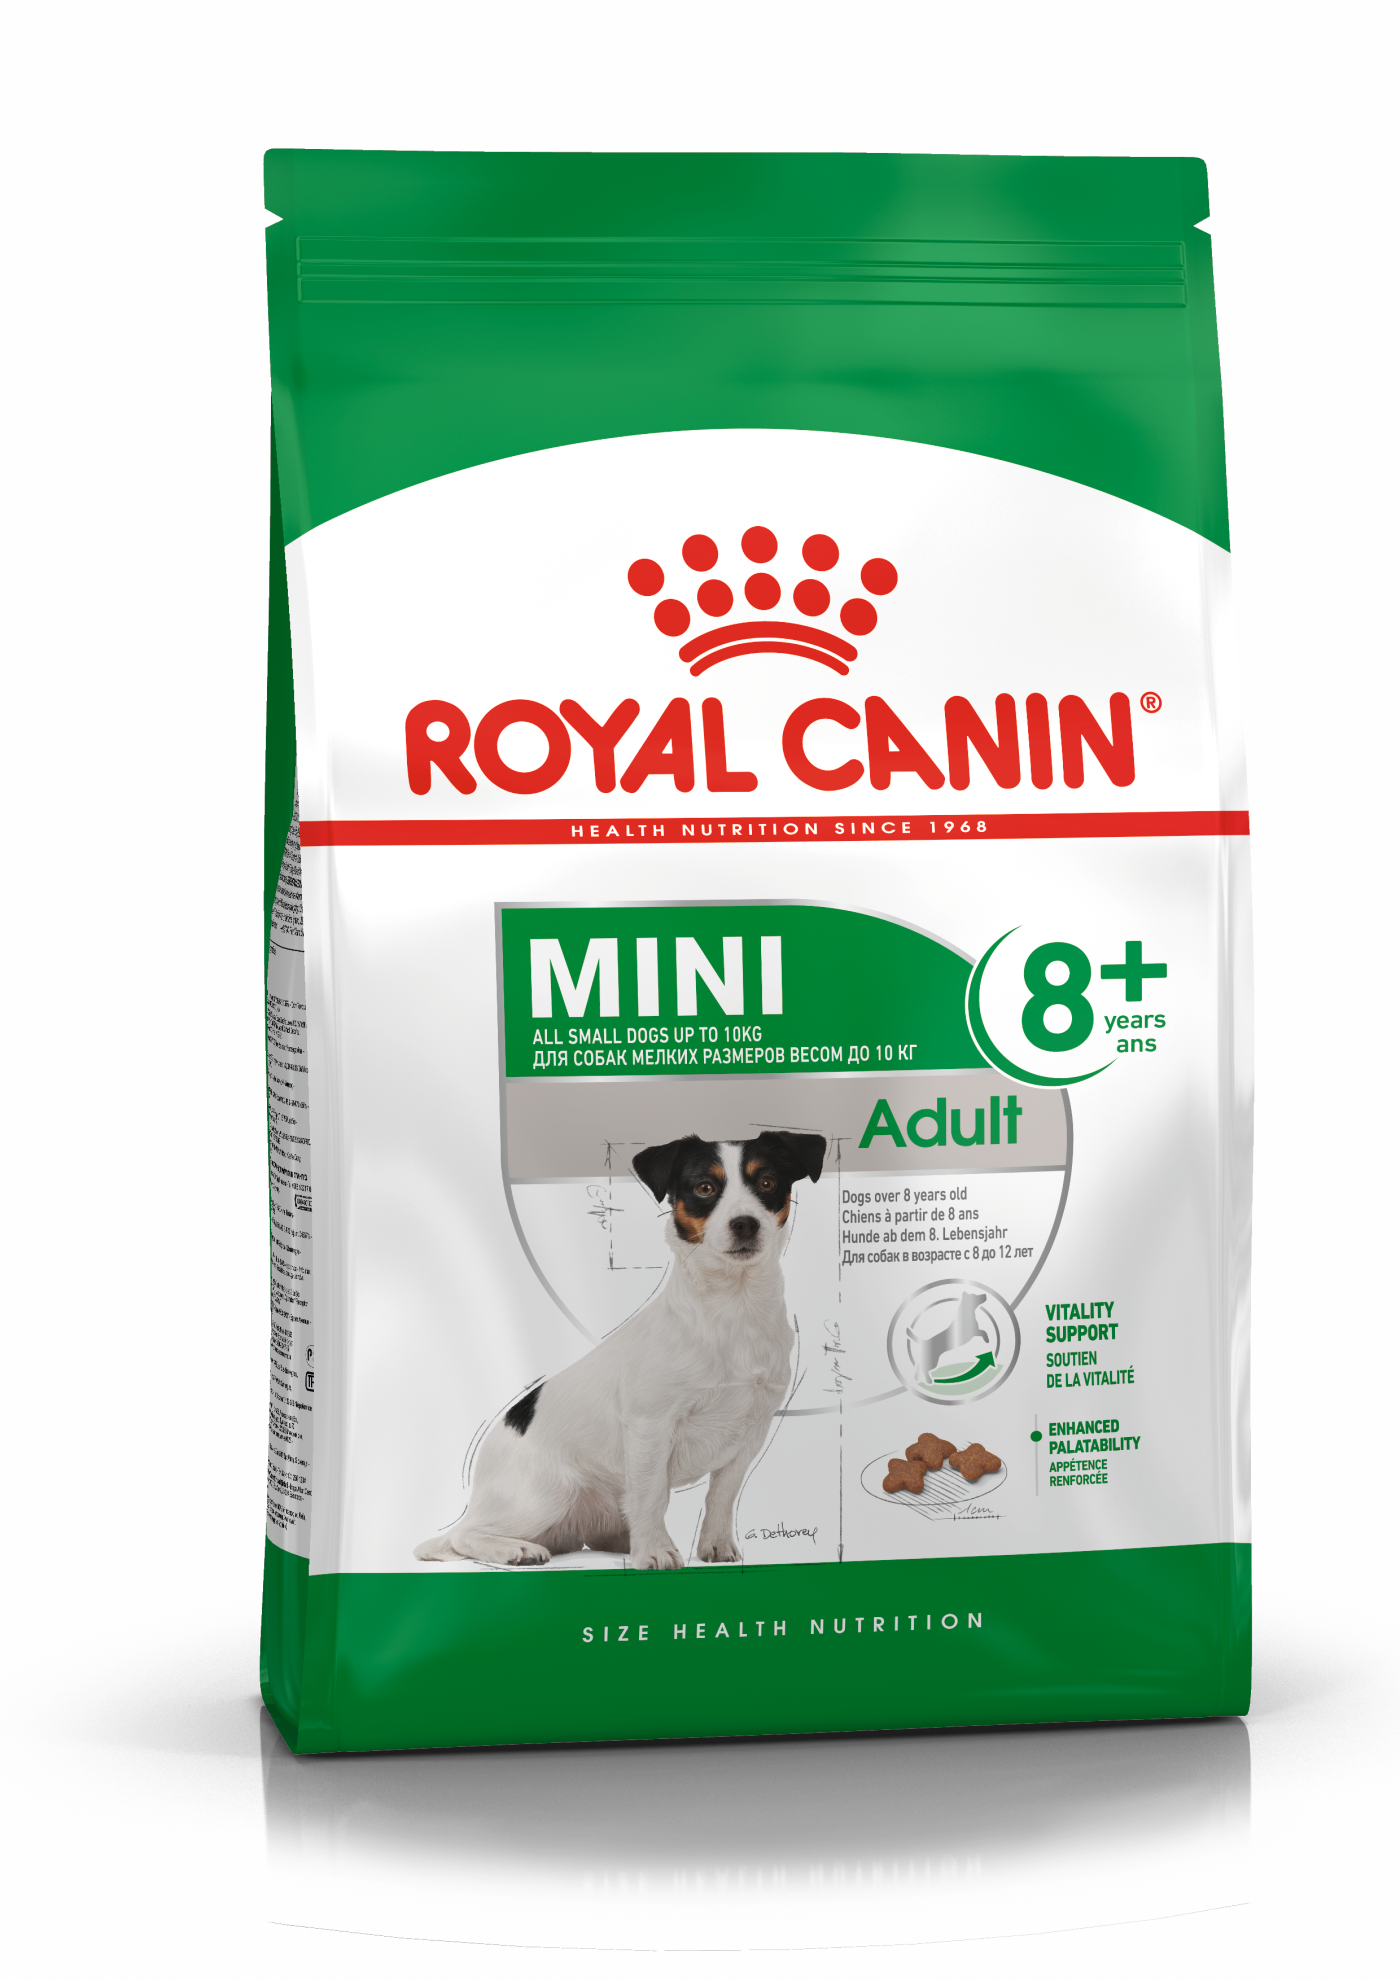 royal canin mini mature 8 kg